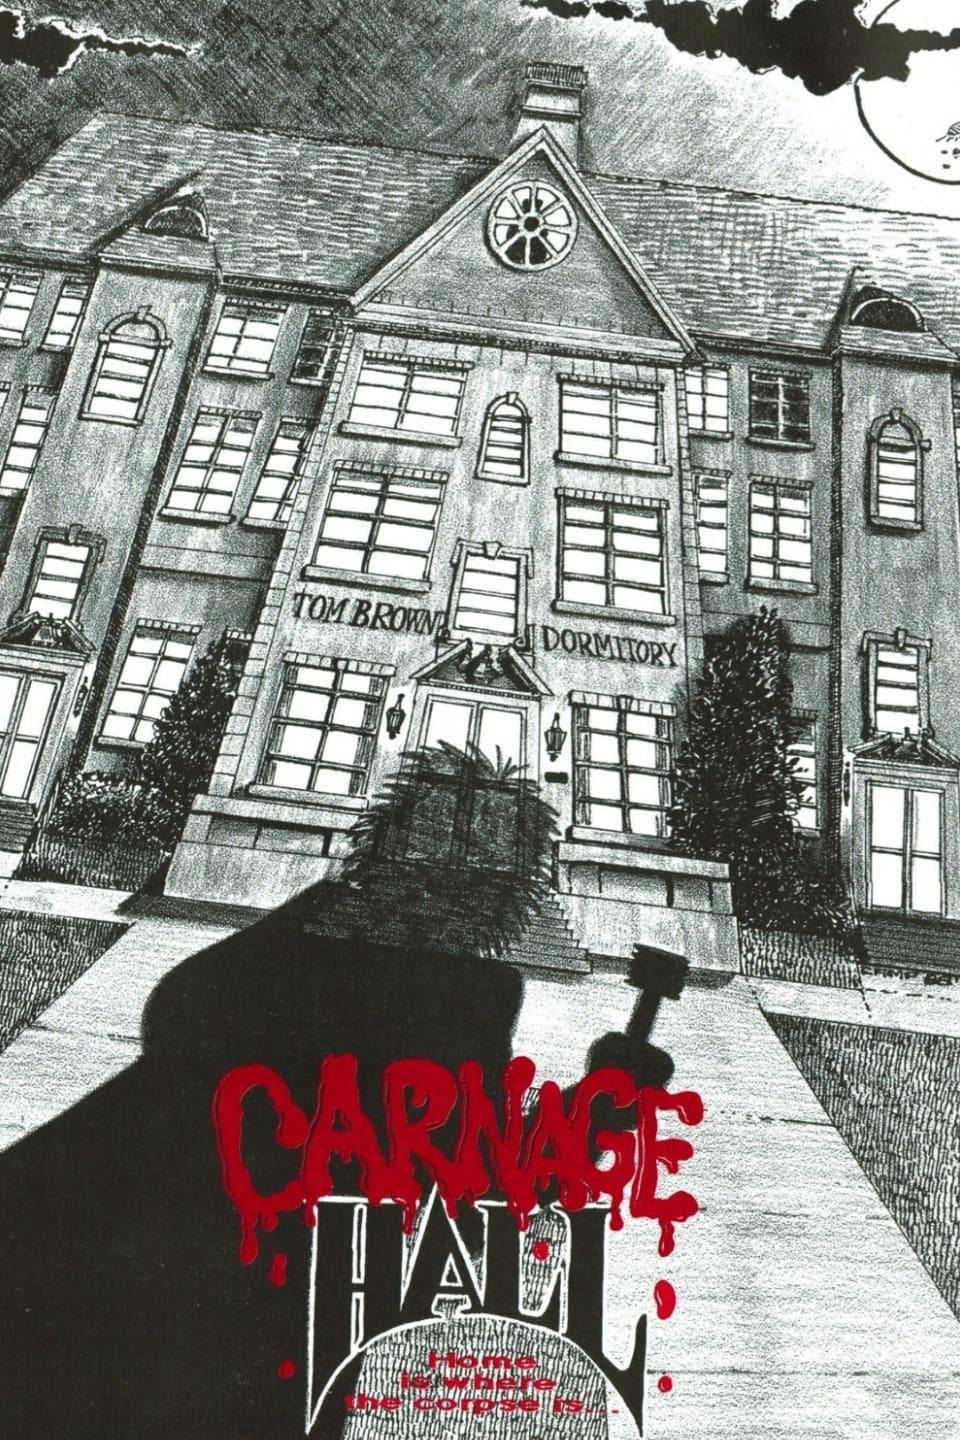 Carnage Hall poster